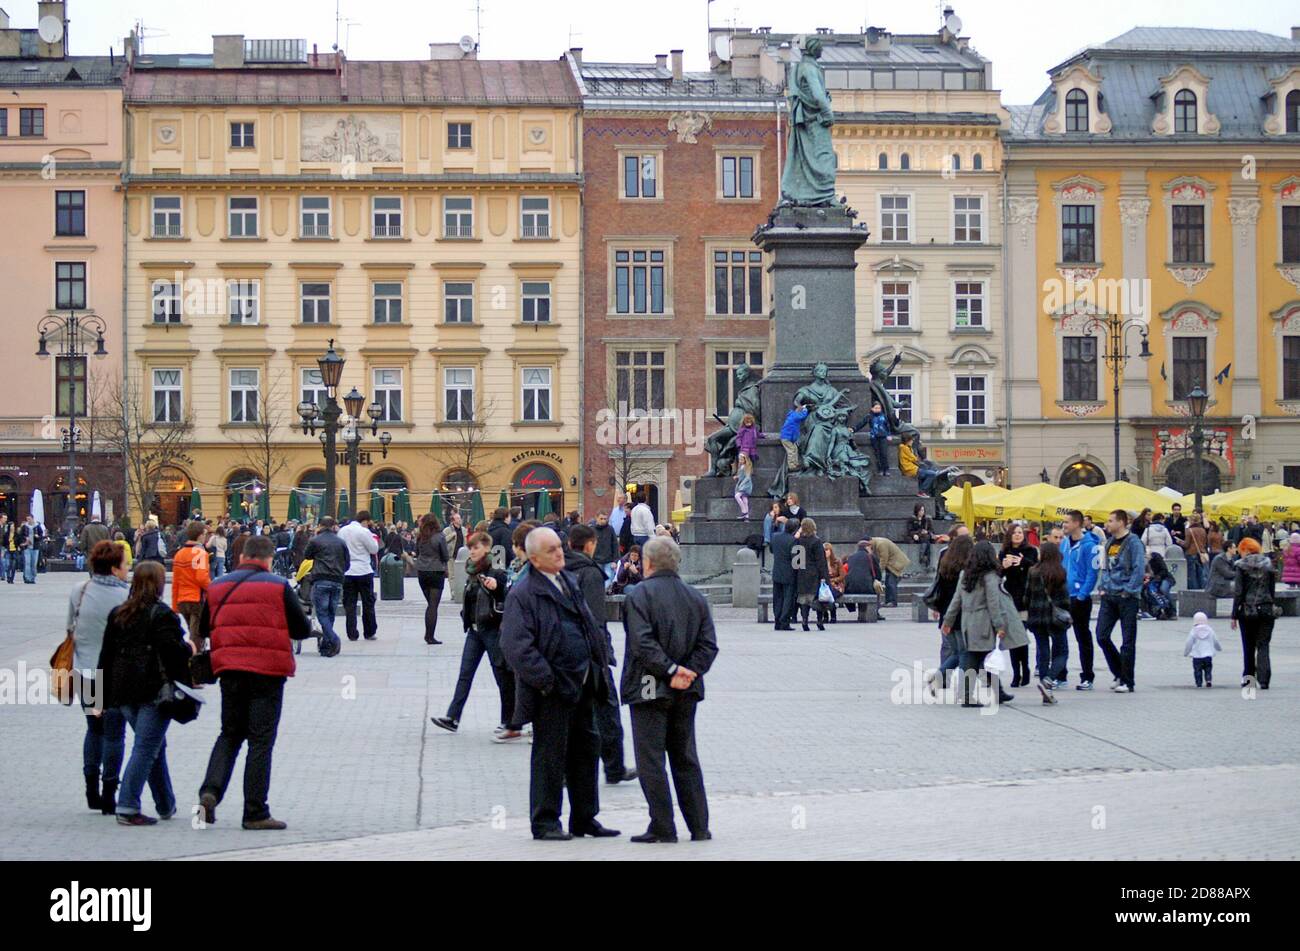 Las casas históricas ofrecen un telón de fondo para el espacio social cultural de la plaza de Cracovia en el casco antiguo de Cracovia, Polonia. Foto de stock